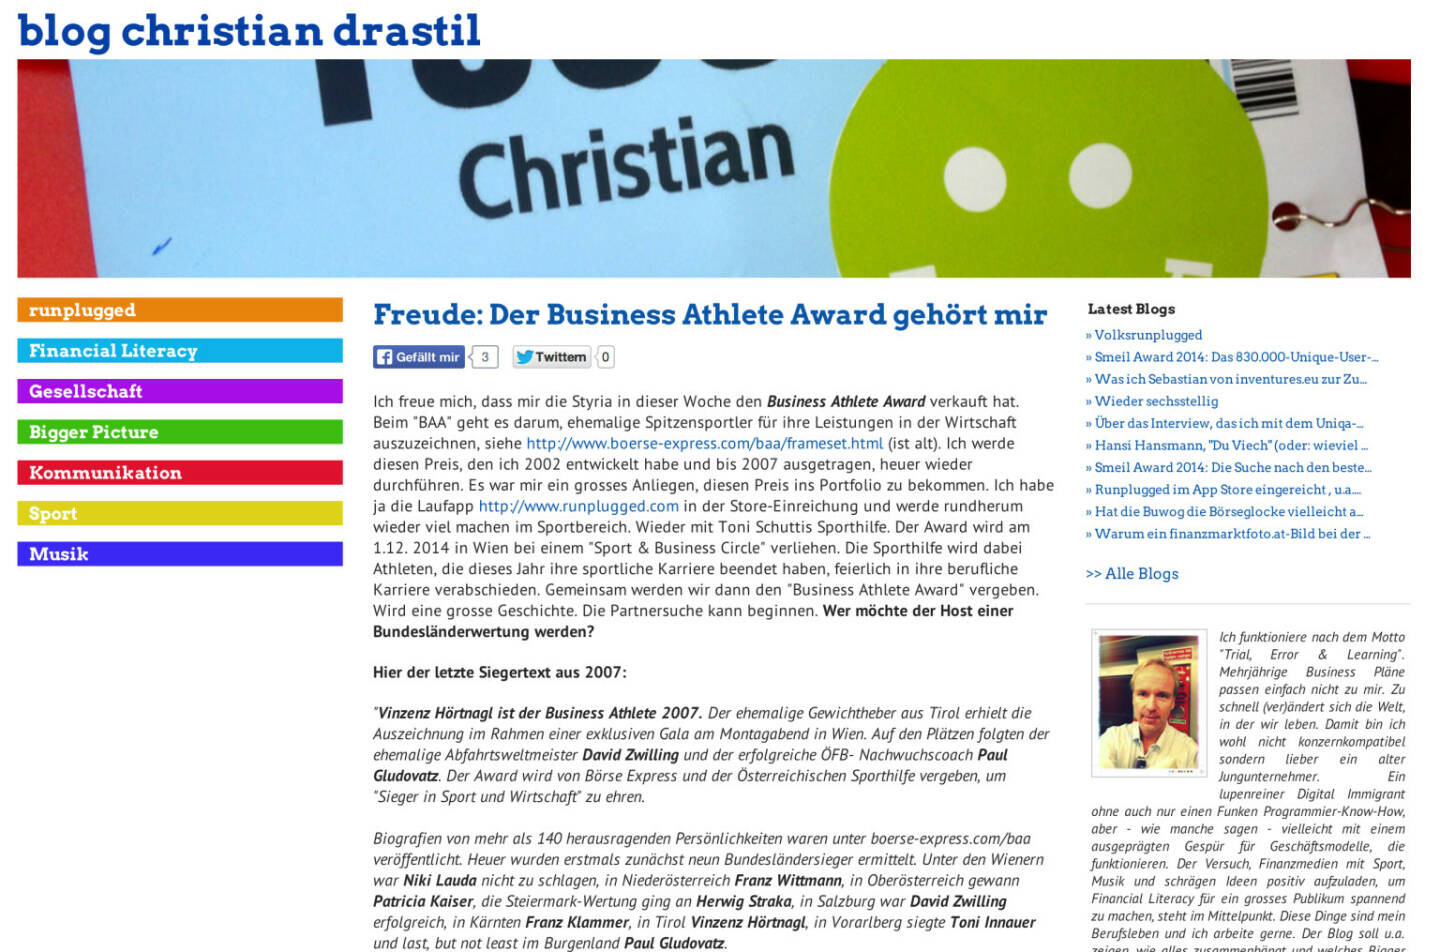 Ausblick: Am 1.12. wird mit der Sporthilfe der Runplugged Business Athlete Award an ehemalige Spitzensportler, die jetzt in der Wirtschaft erfolgreich sind, vergeben - http://www.christian-drastil.com/blog/2014/04/25/freude_der_business_athlete_award_gehort_mir